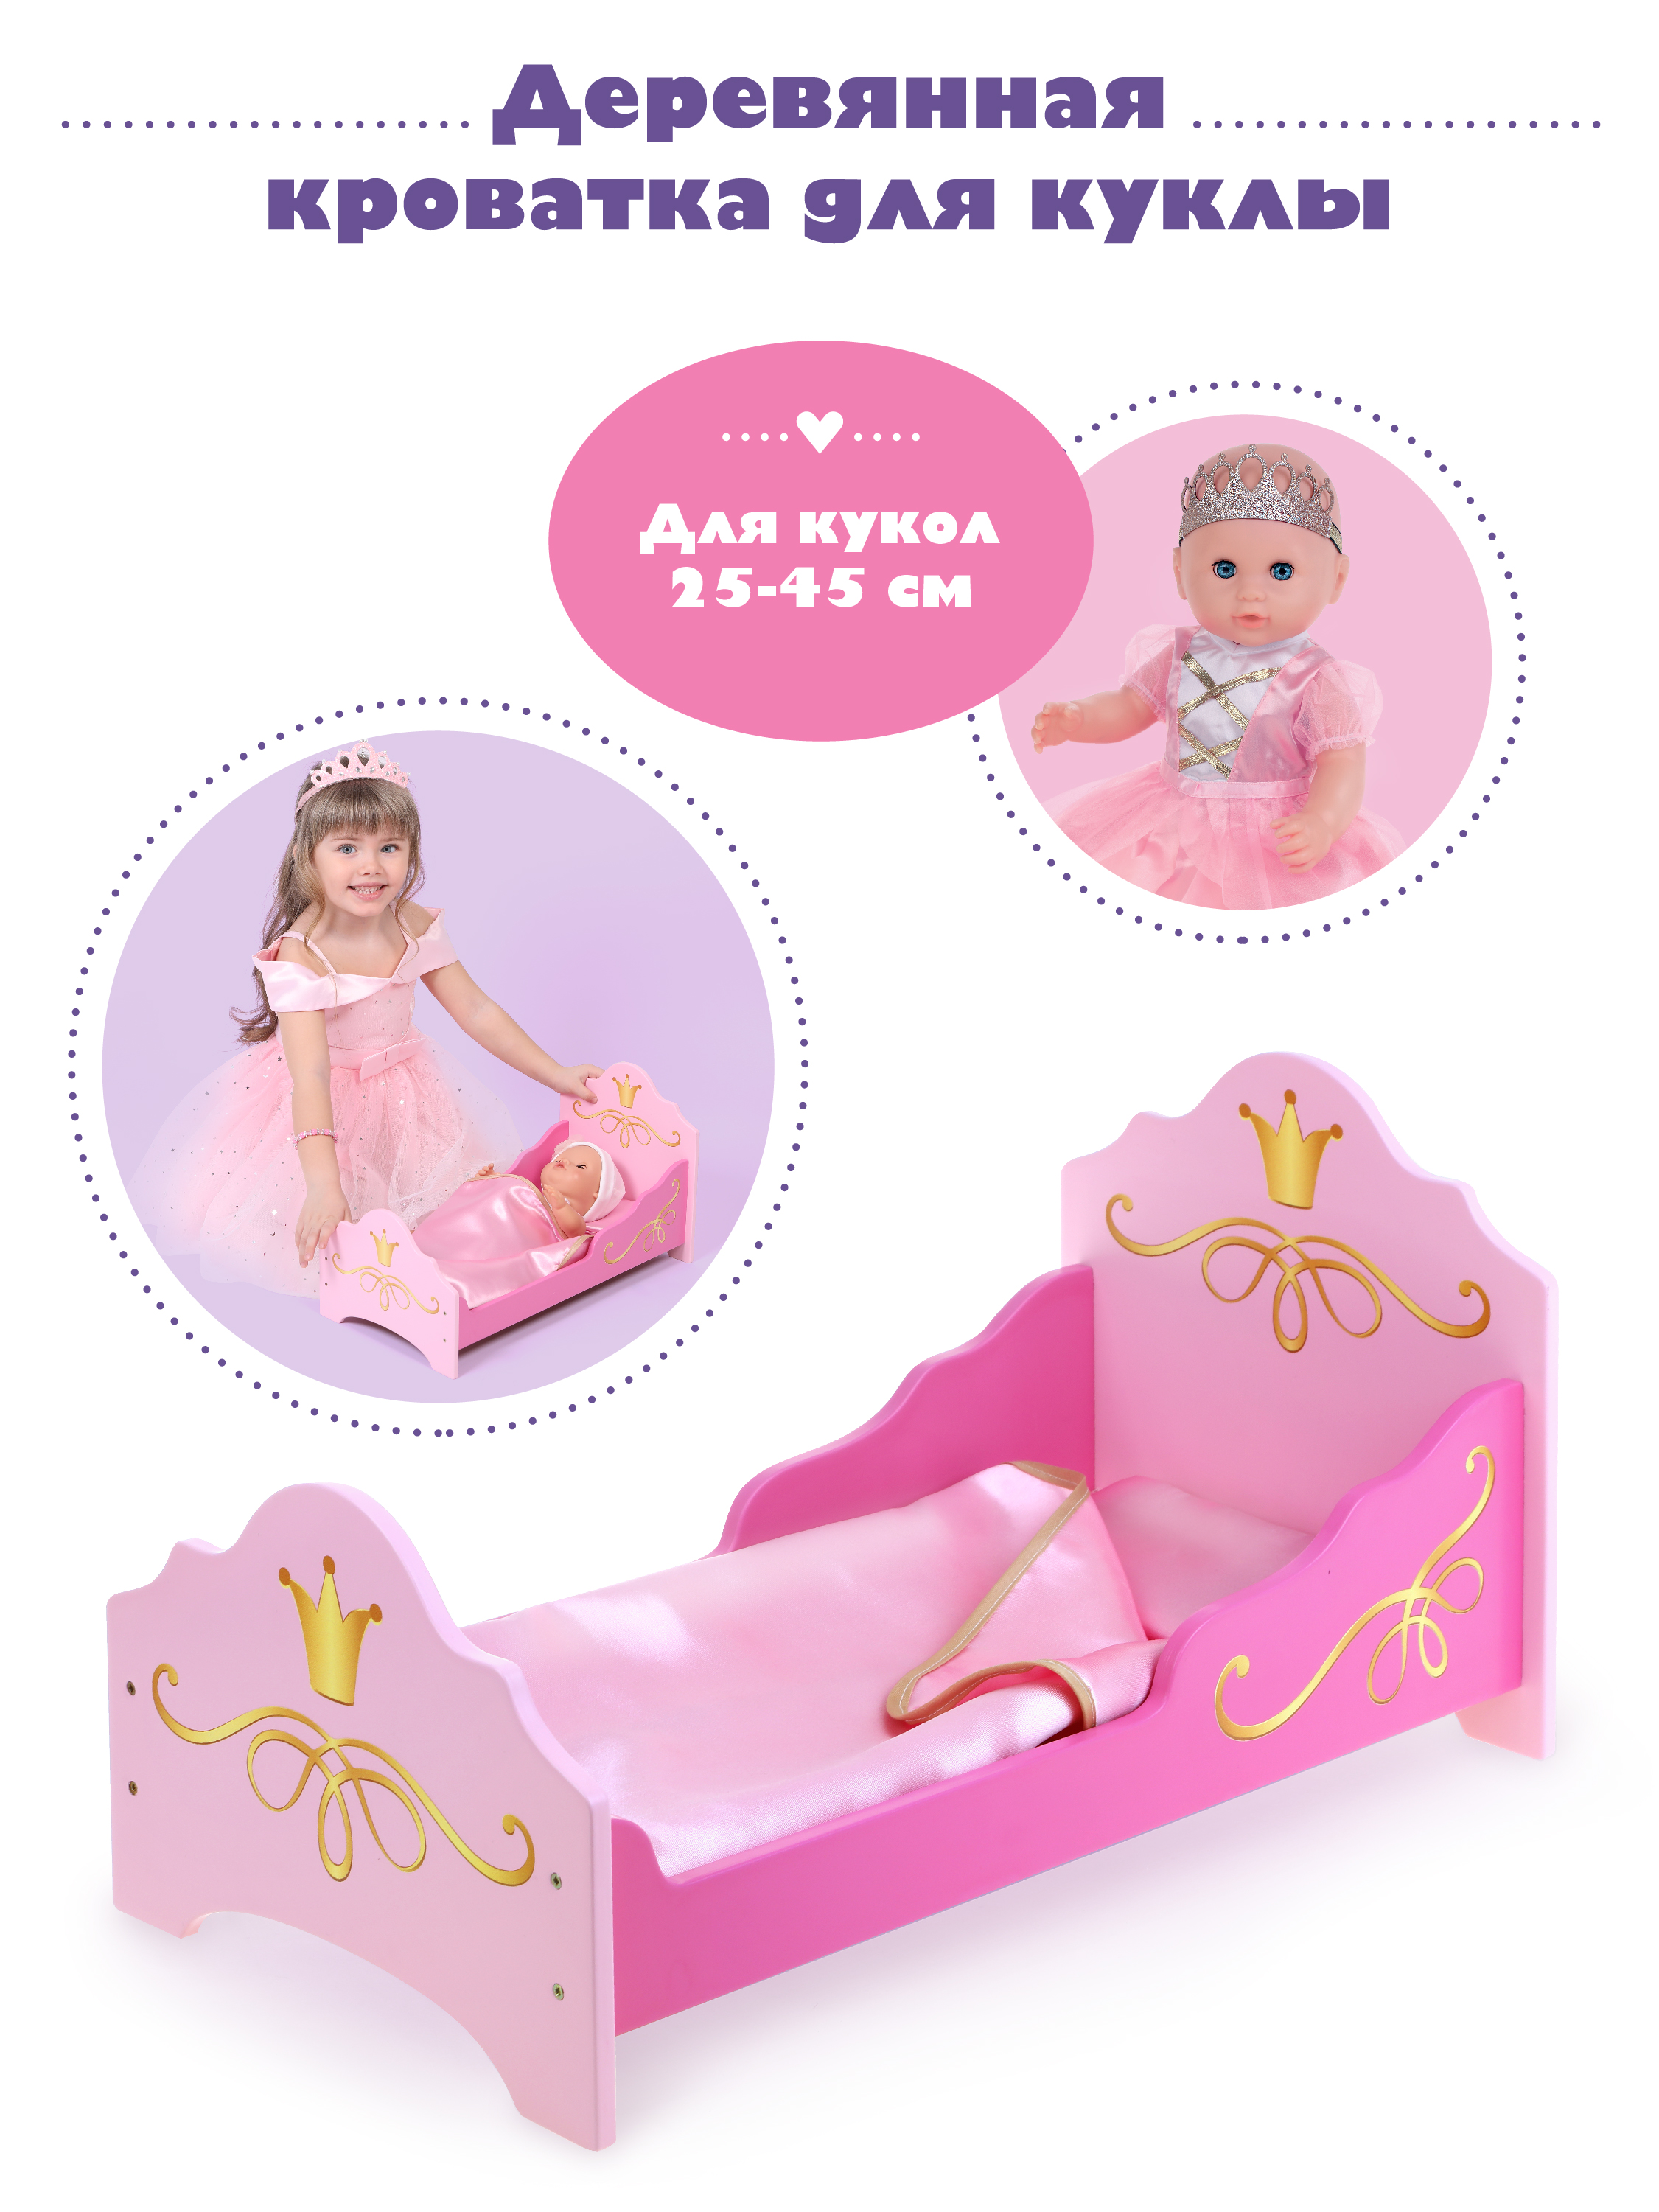 Кроватка для куклы Mary Poppins Принцесса 67398 кроватка для куклы russia 54 см к 02